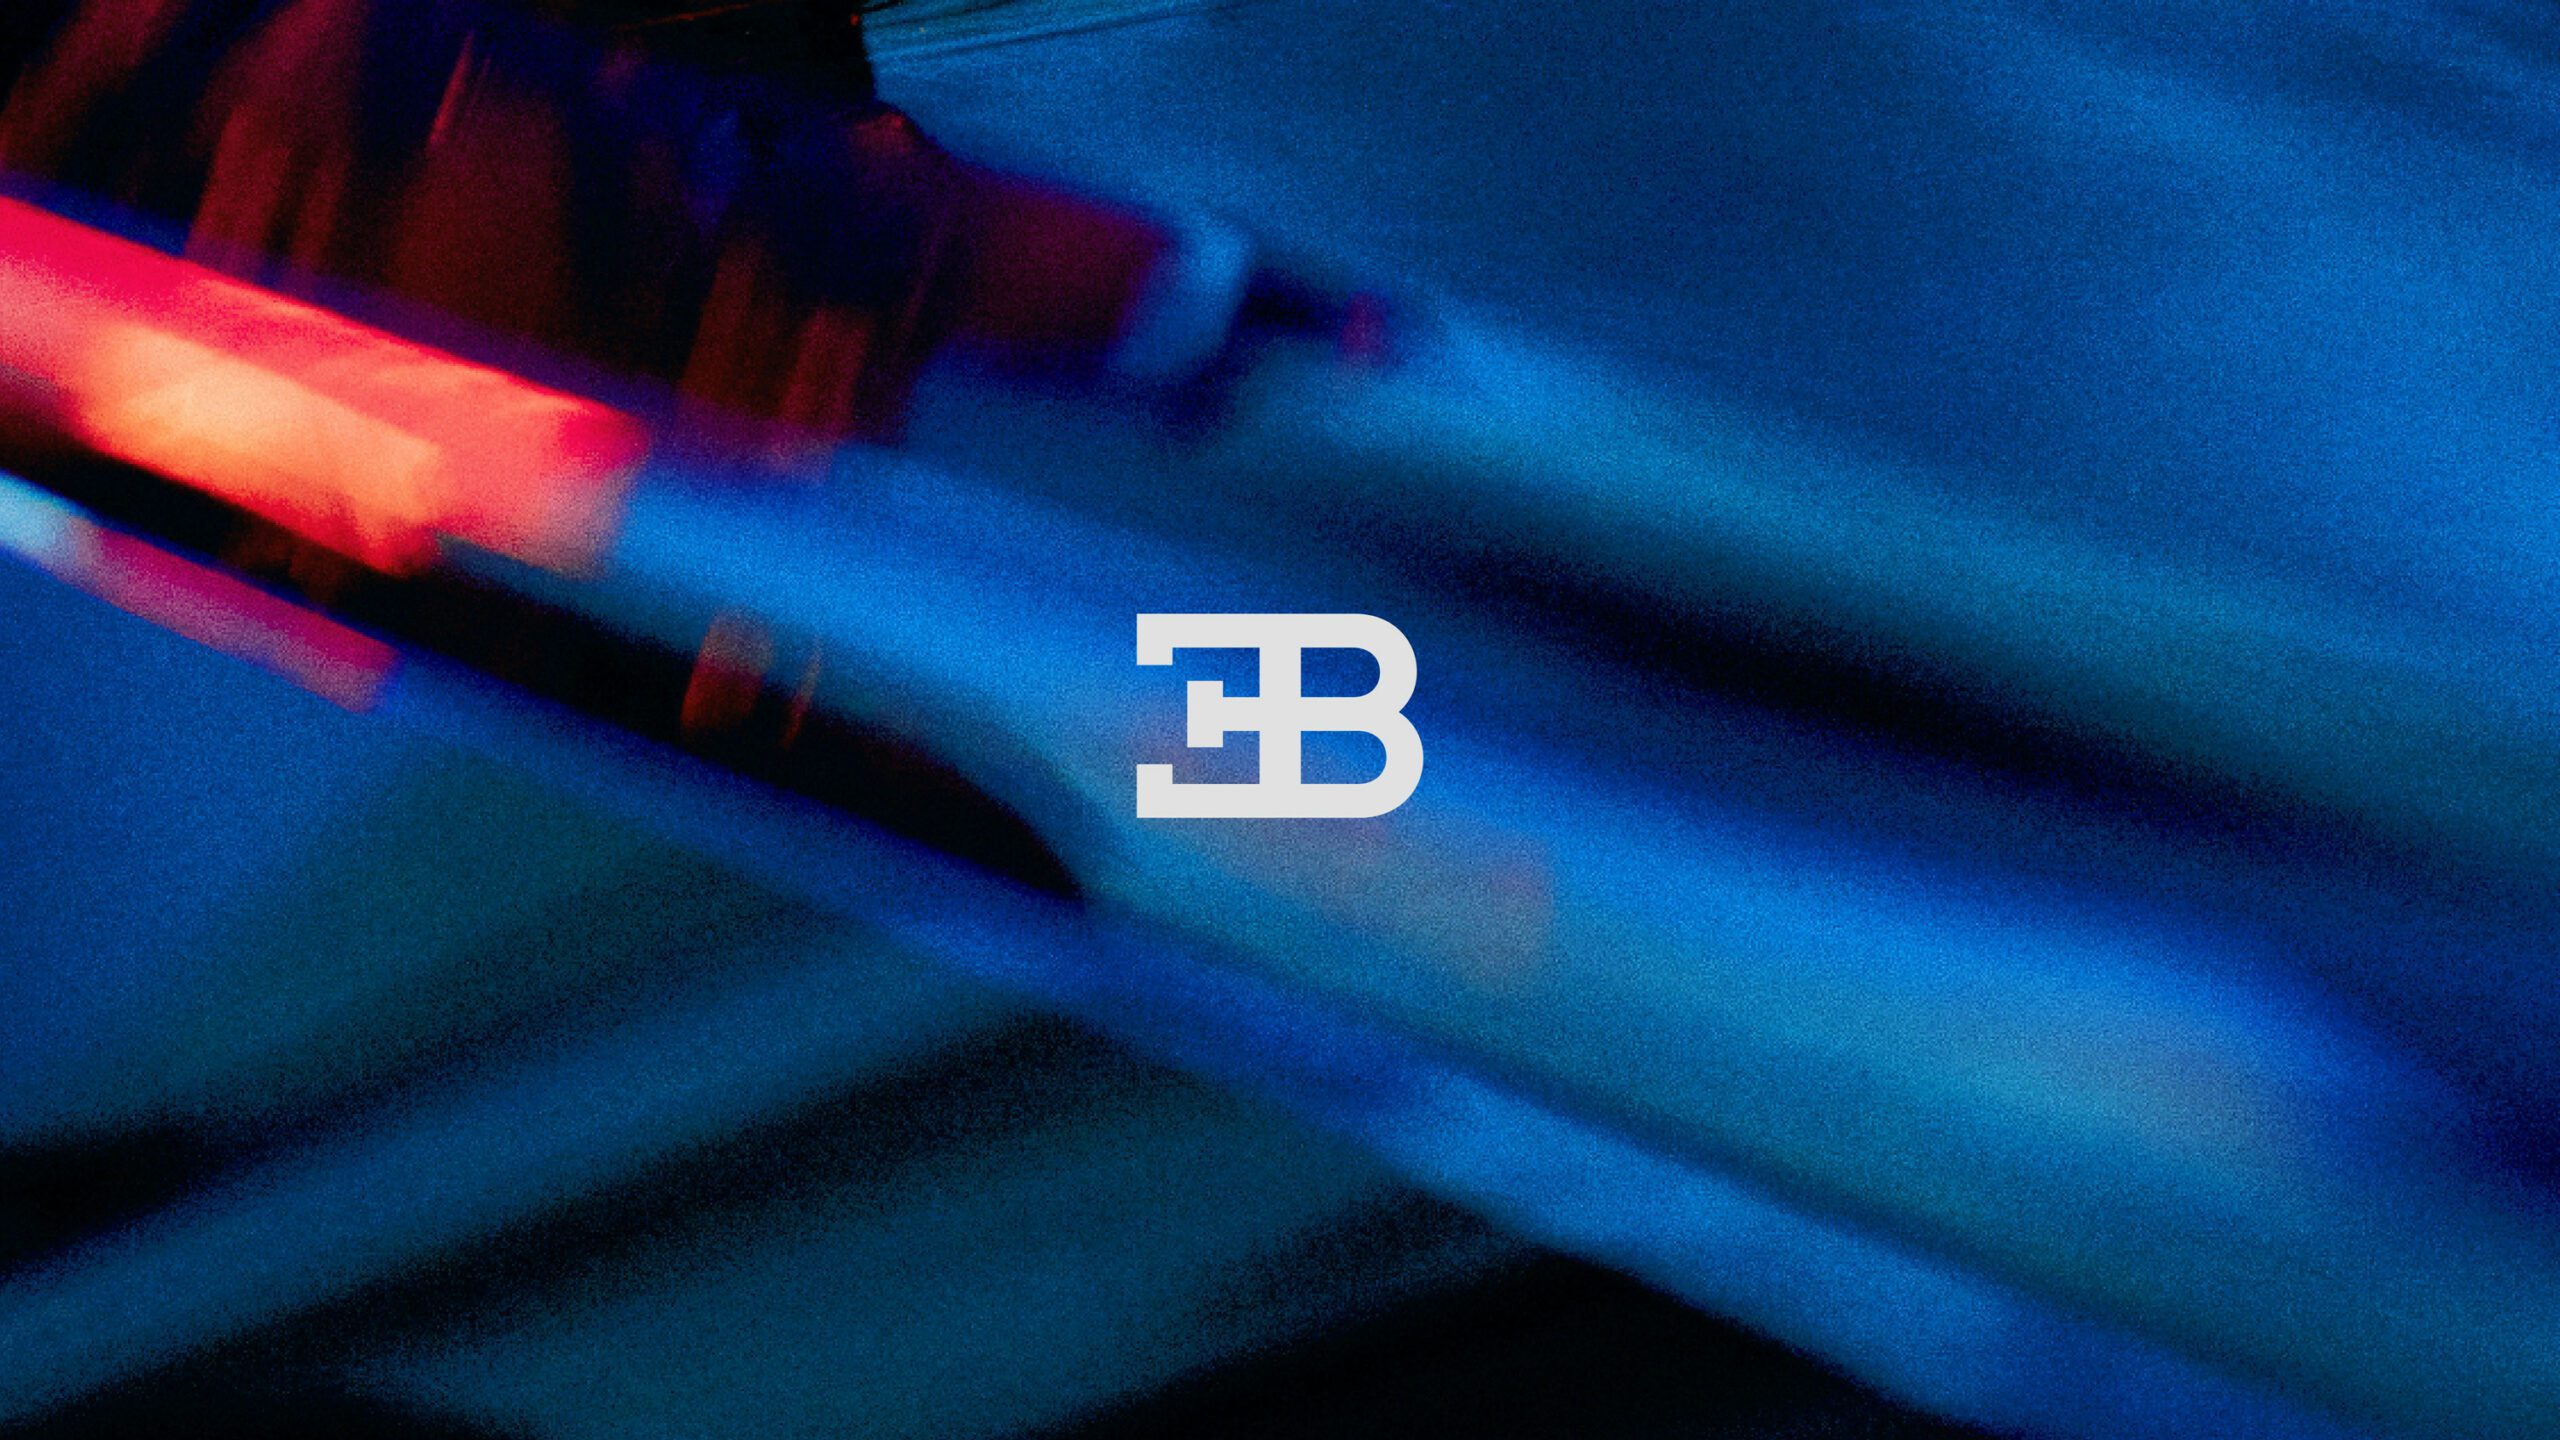 Bugatti are rebranding. Pictured is the iconic EB logo